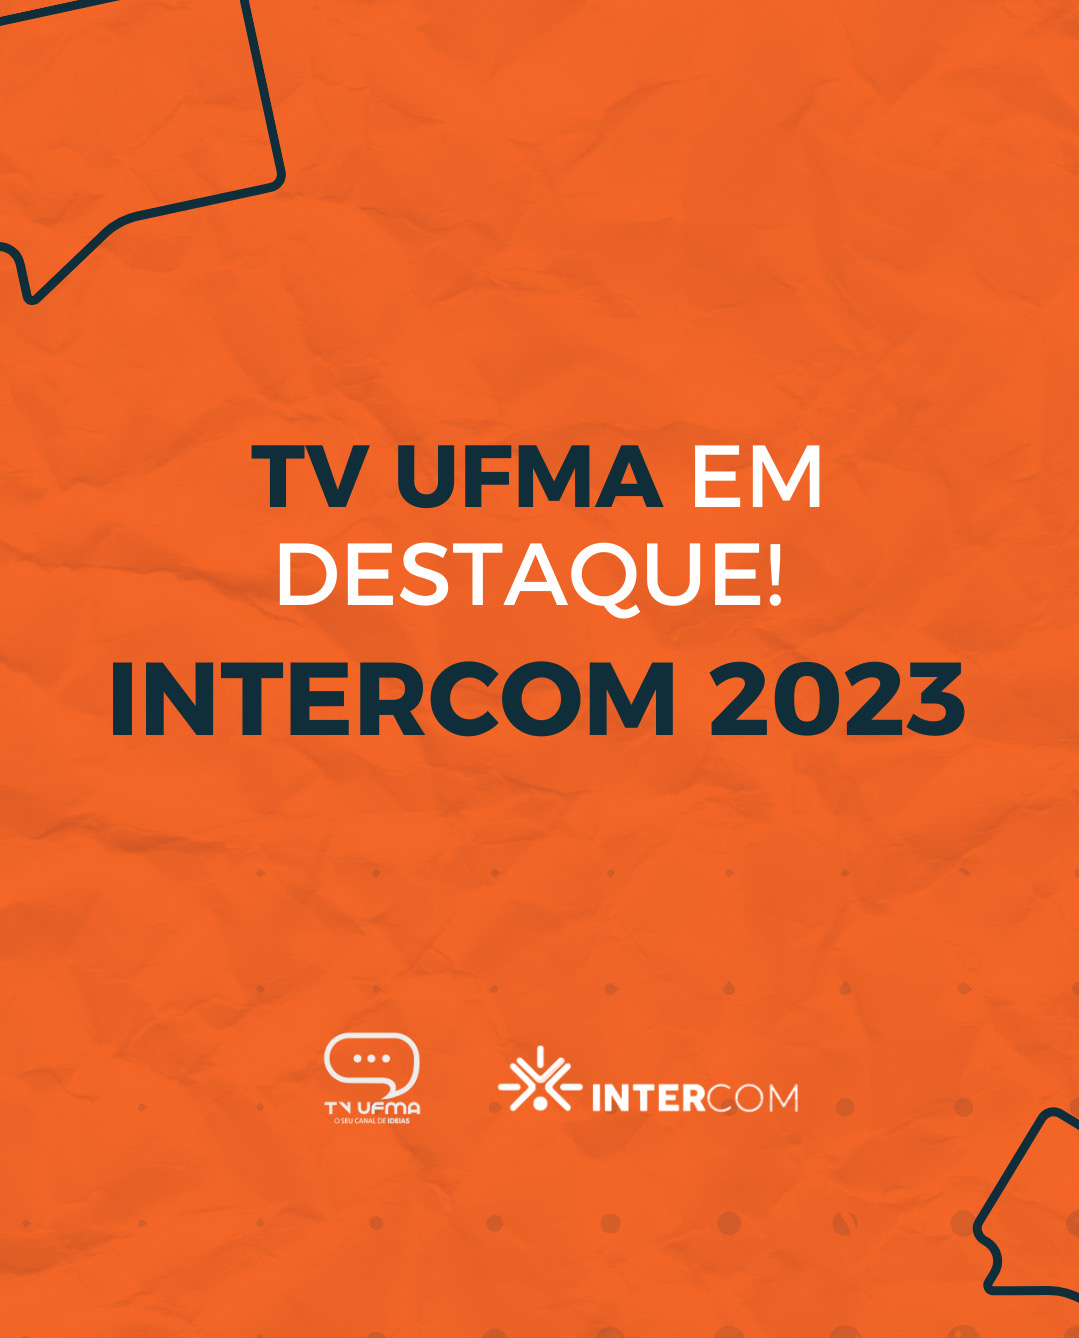 TV UFMA ganha destaque com projetos de inclusão e divulgação científica no Intercom Nacional 2023